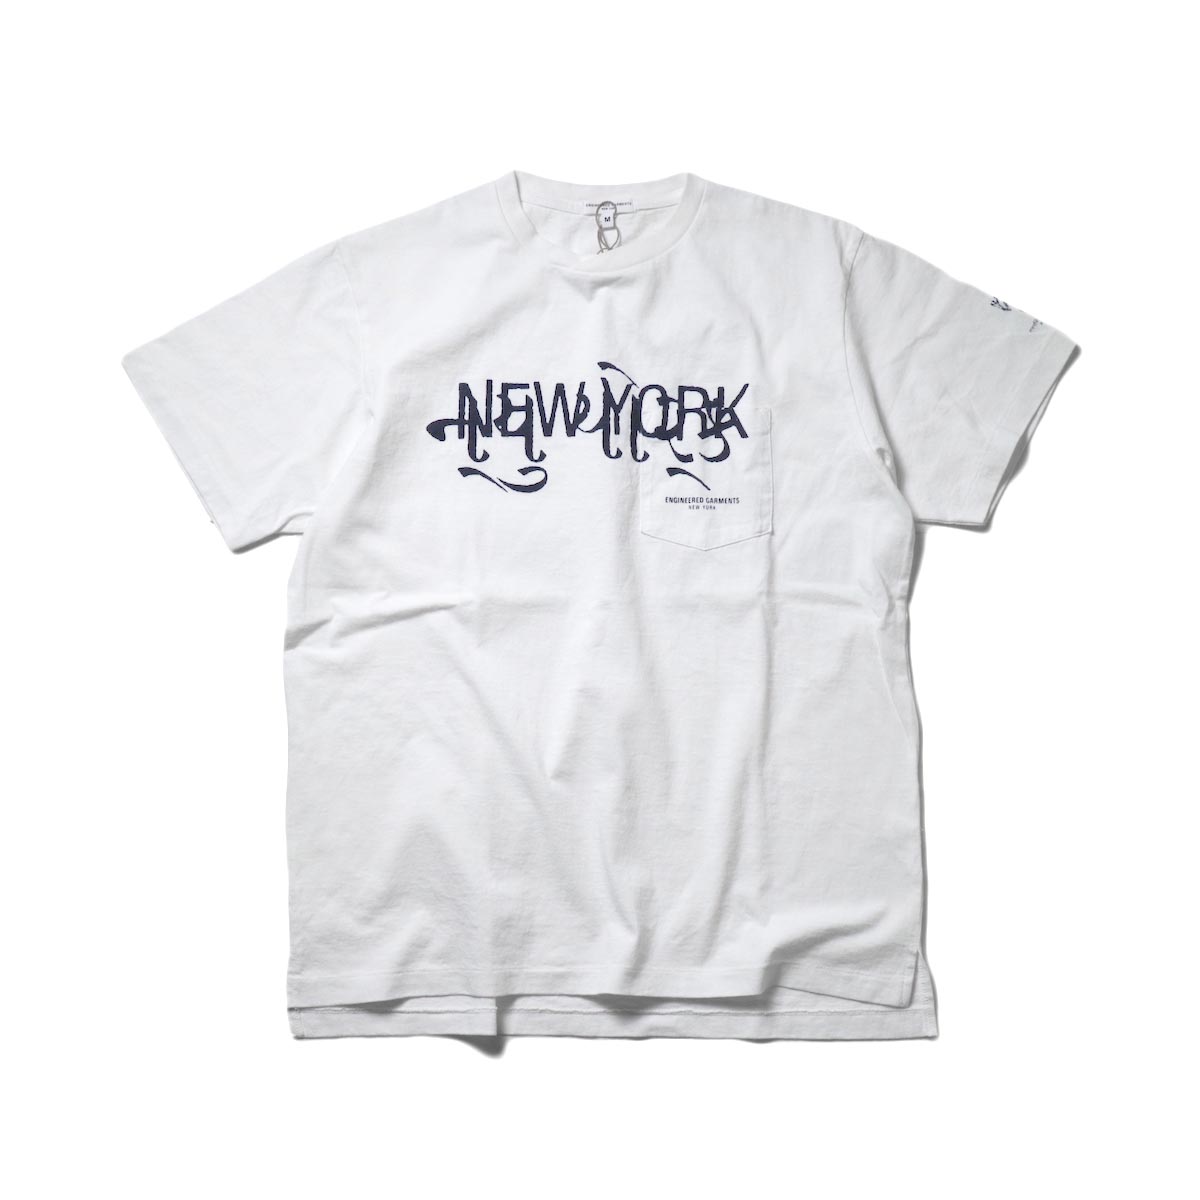 Engineered Garments / Printed Cross Crew Neck T-shirt -New York (White)